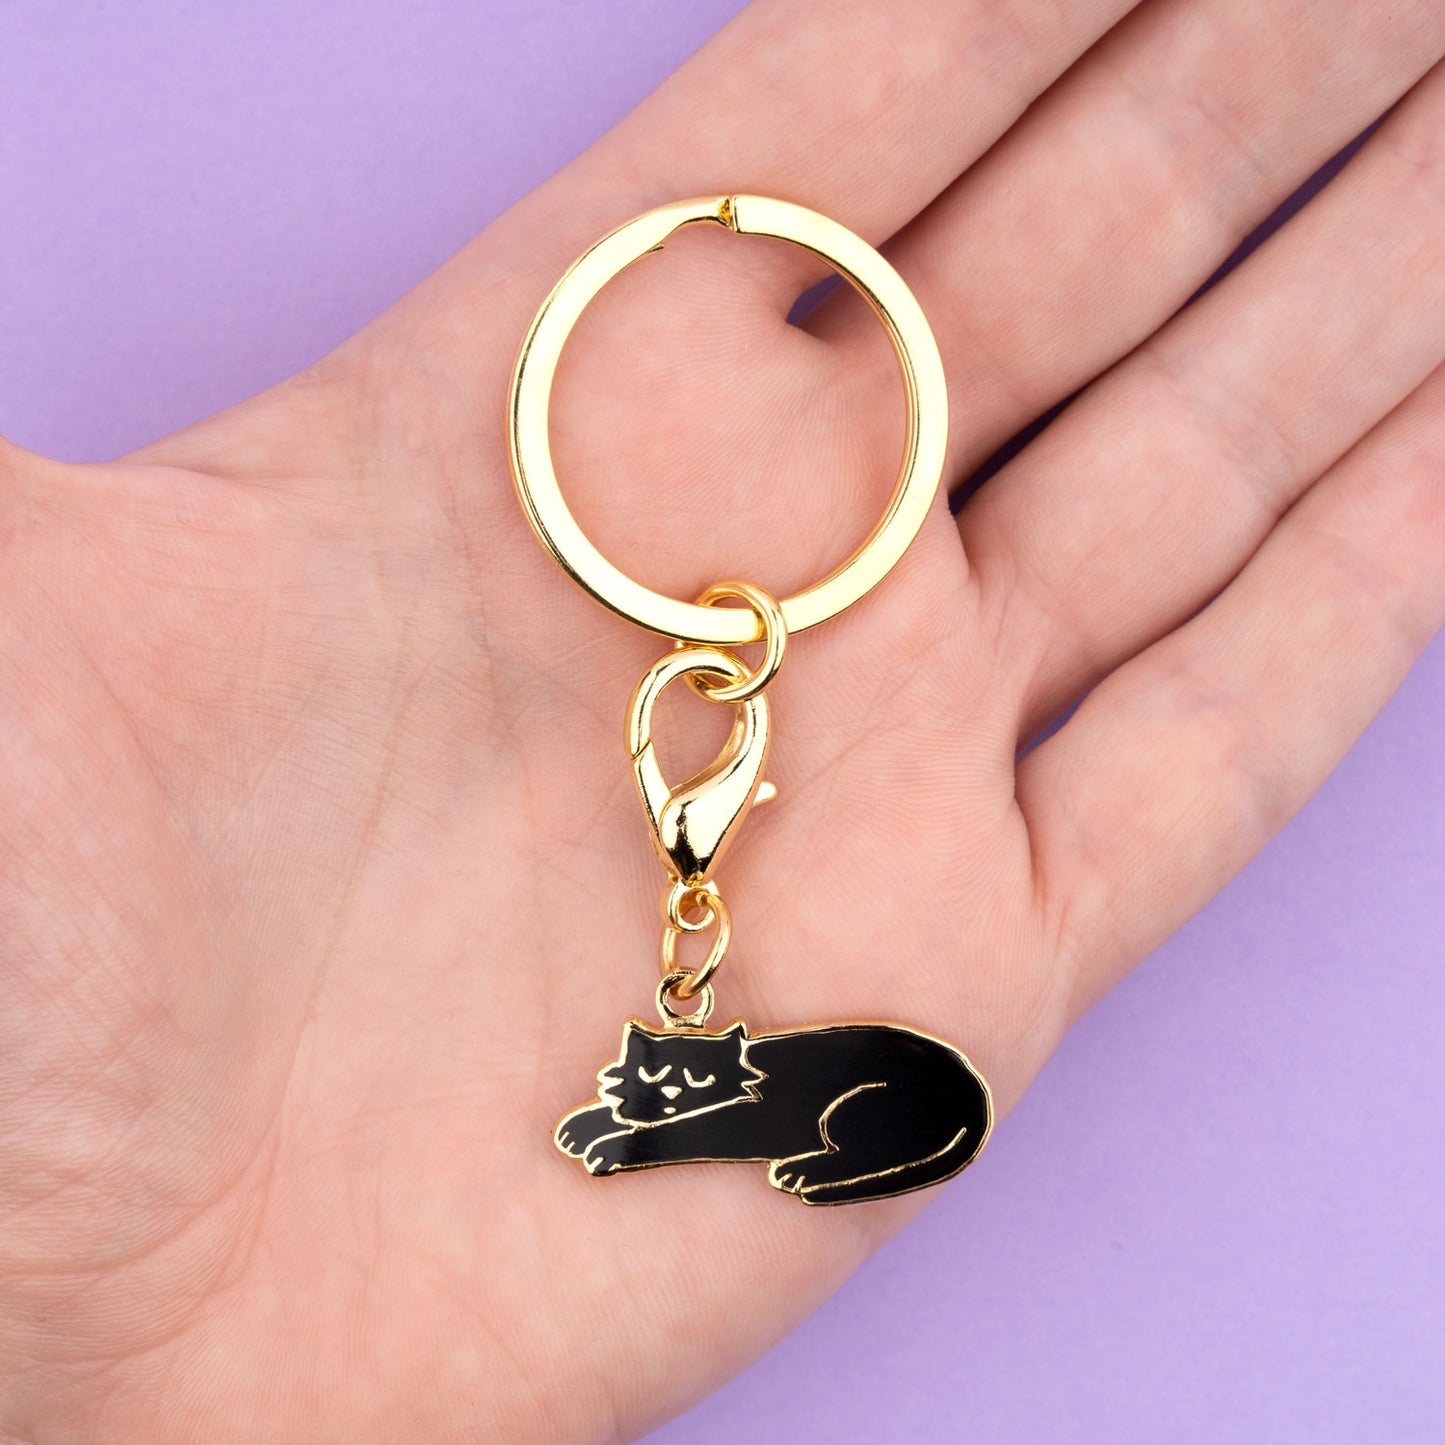 Black Cat Key Ring / Pet Tag